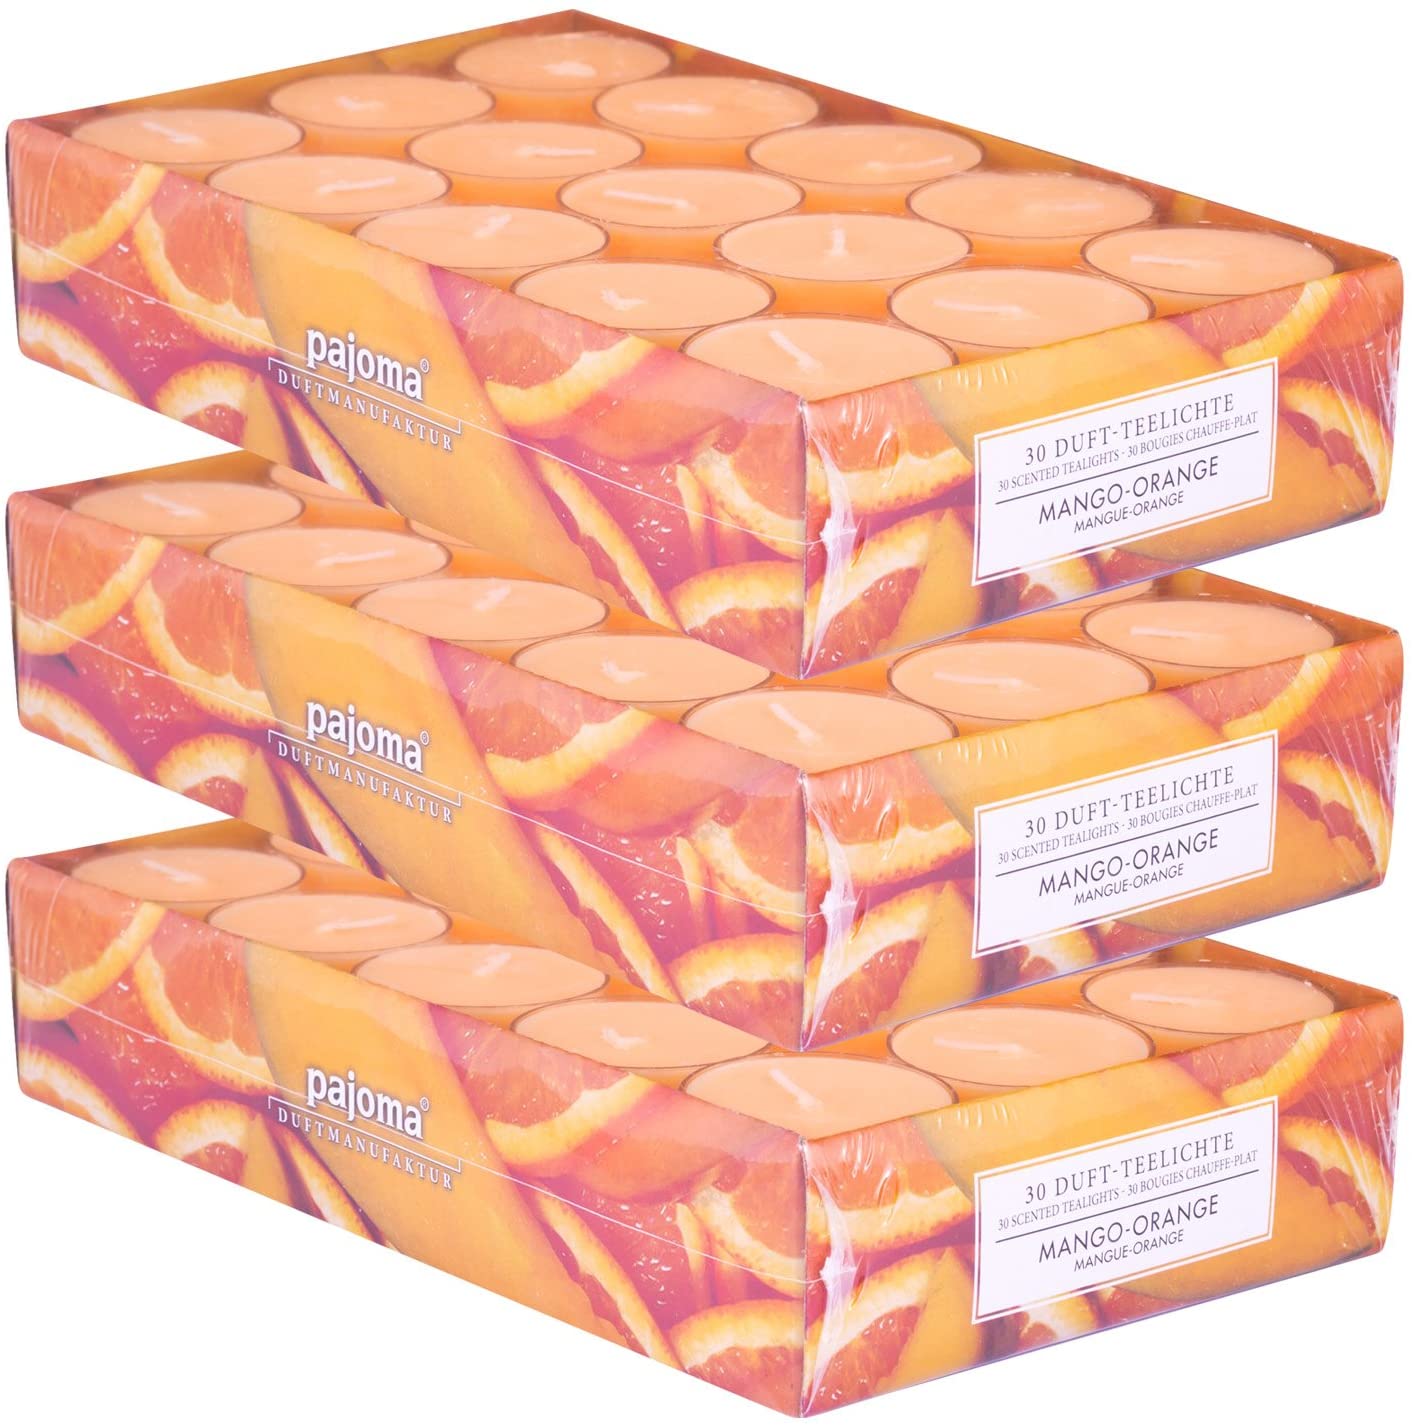 Pajoma Duftteelicht Mango-Orange, 90 Stück (3 X 30Er Pack) In Verschiedenen